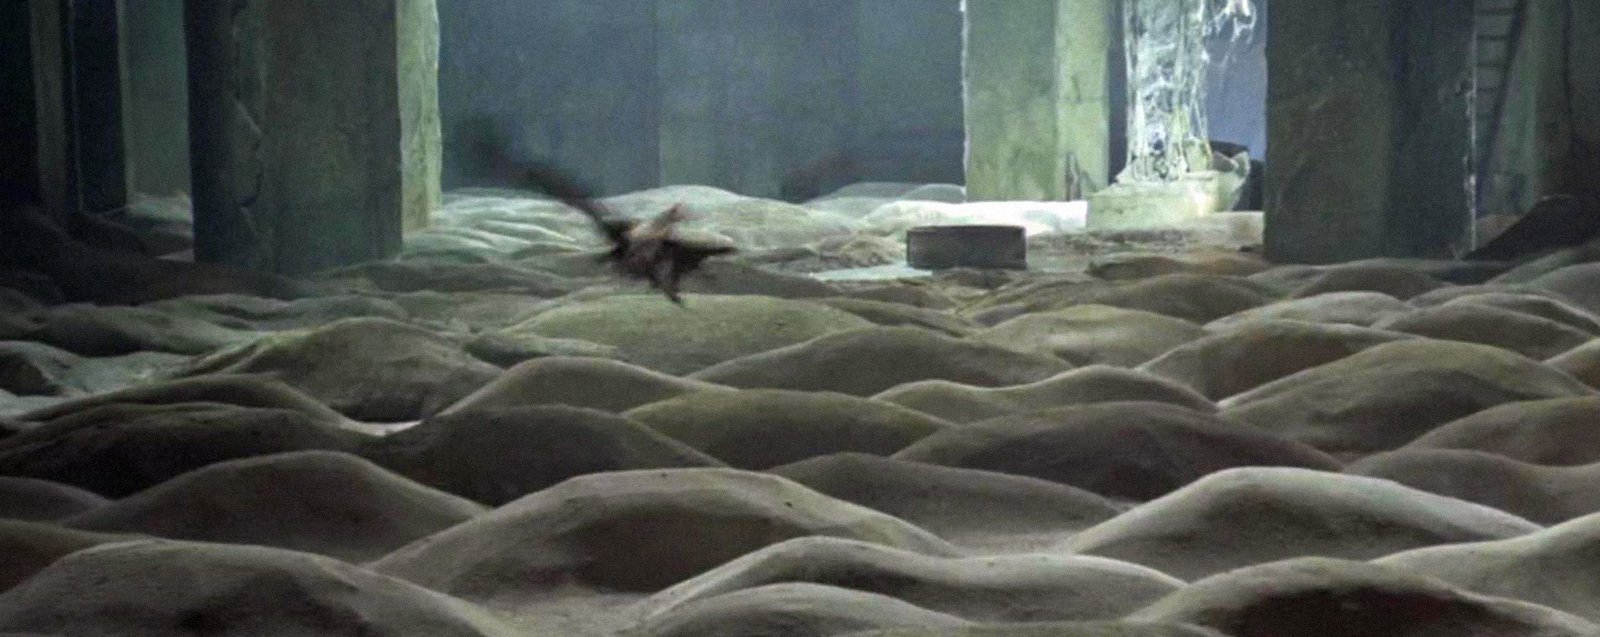 Image: Still shot from the movie Stalker, dir. Andrey Tarkovsky, 1979